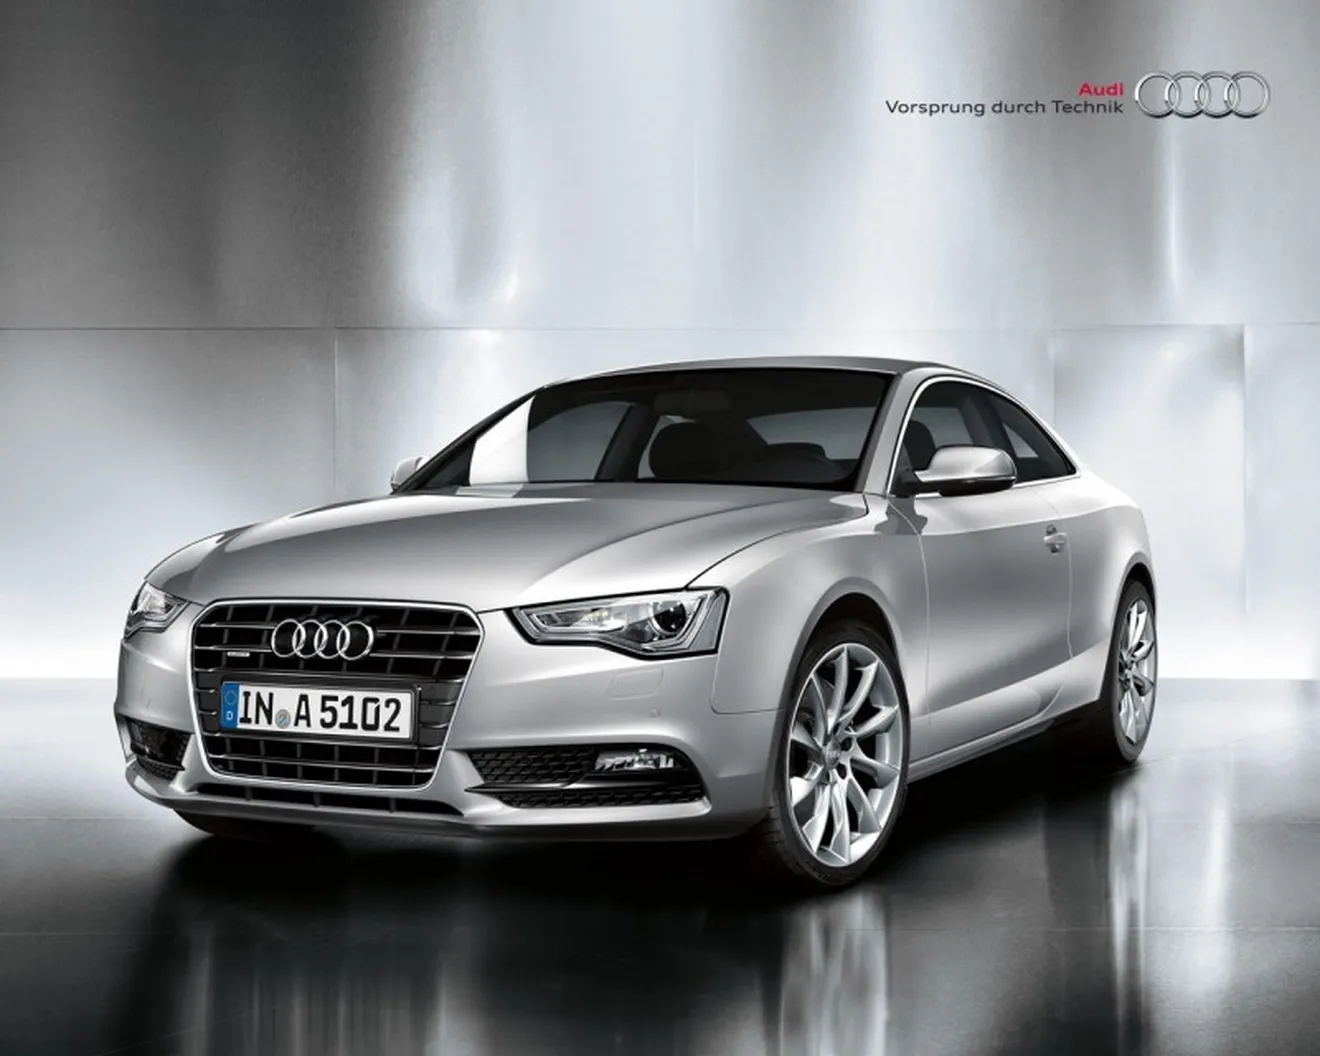 Audi presenta su nuevo motor 1.8 TFSI para el Audi A5